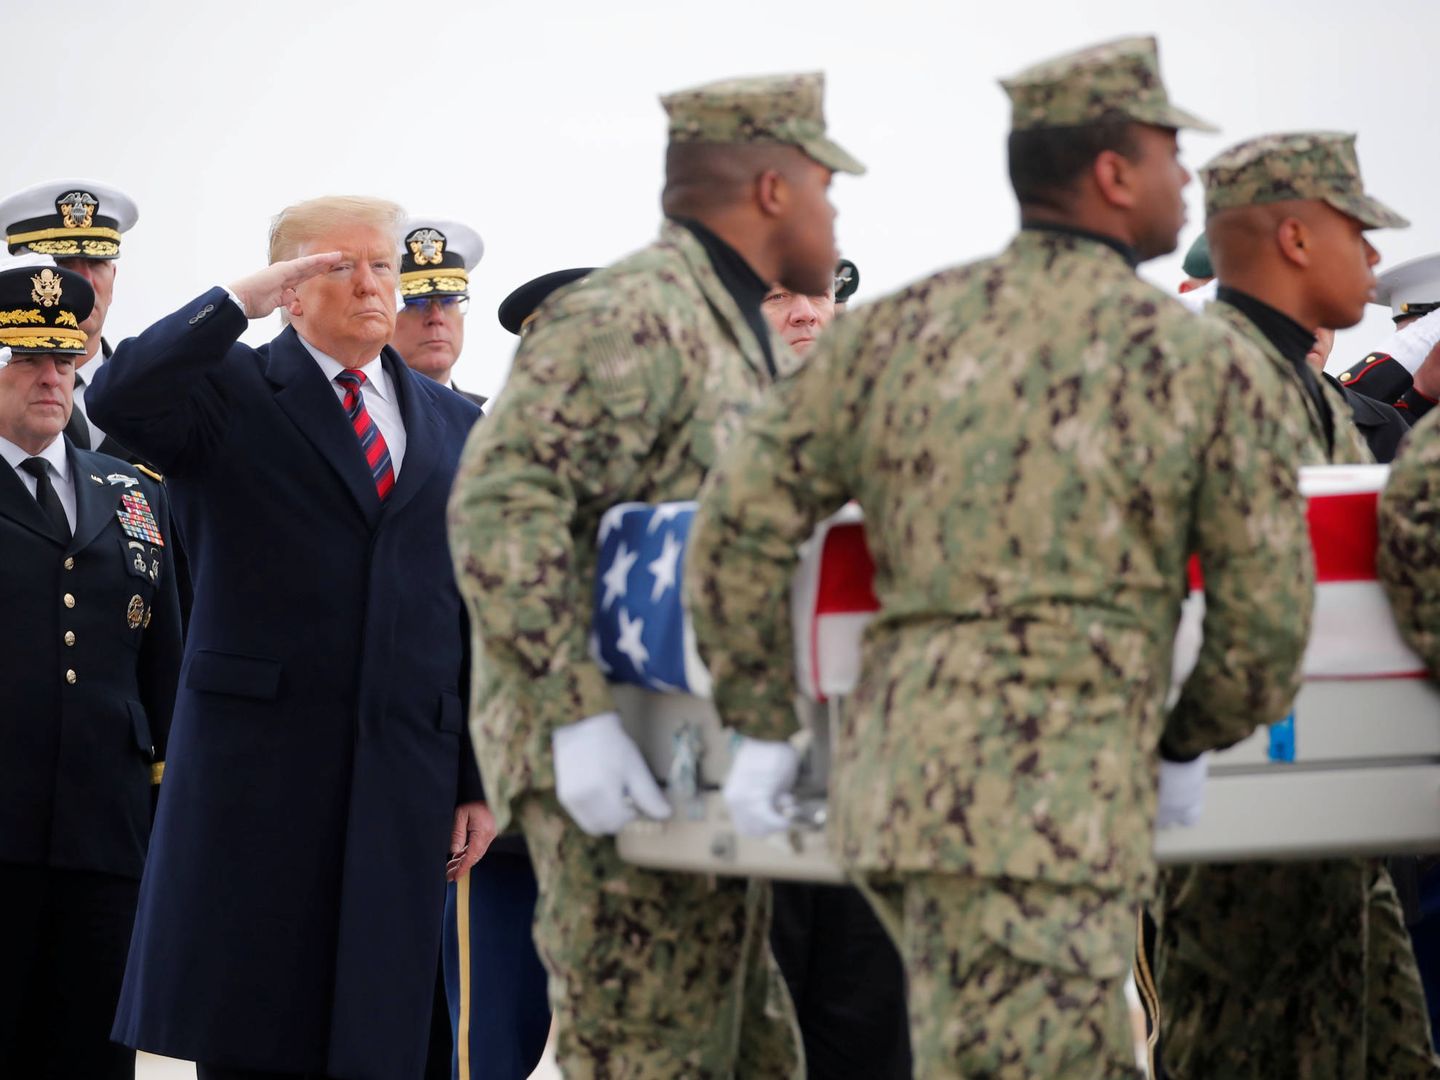 El presidente Trump junto a una guardia de honor que transporta el ataúd de Scott Wirtz y los otros tres estadounidenses caídos en Siria. (Reuters)